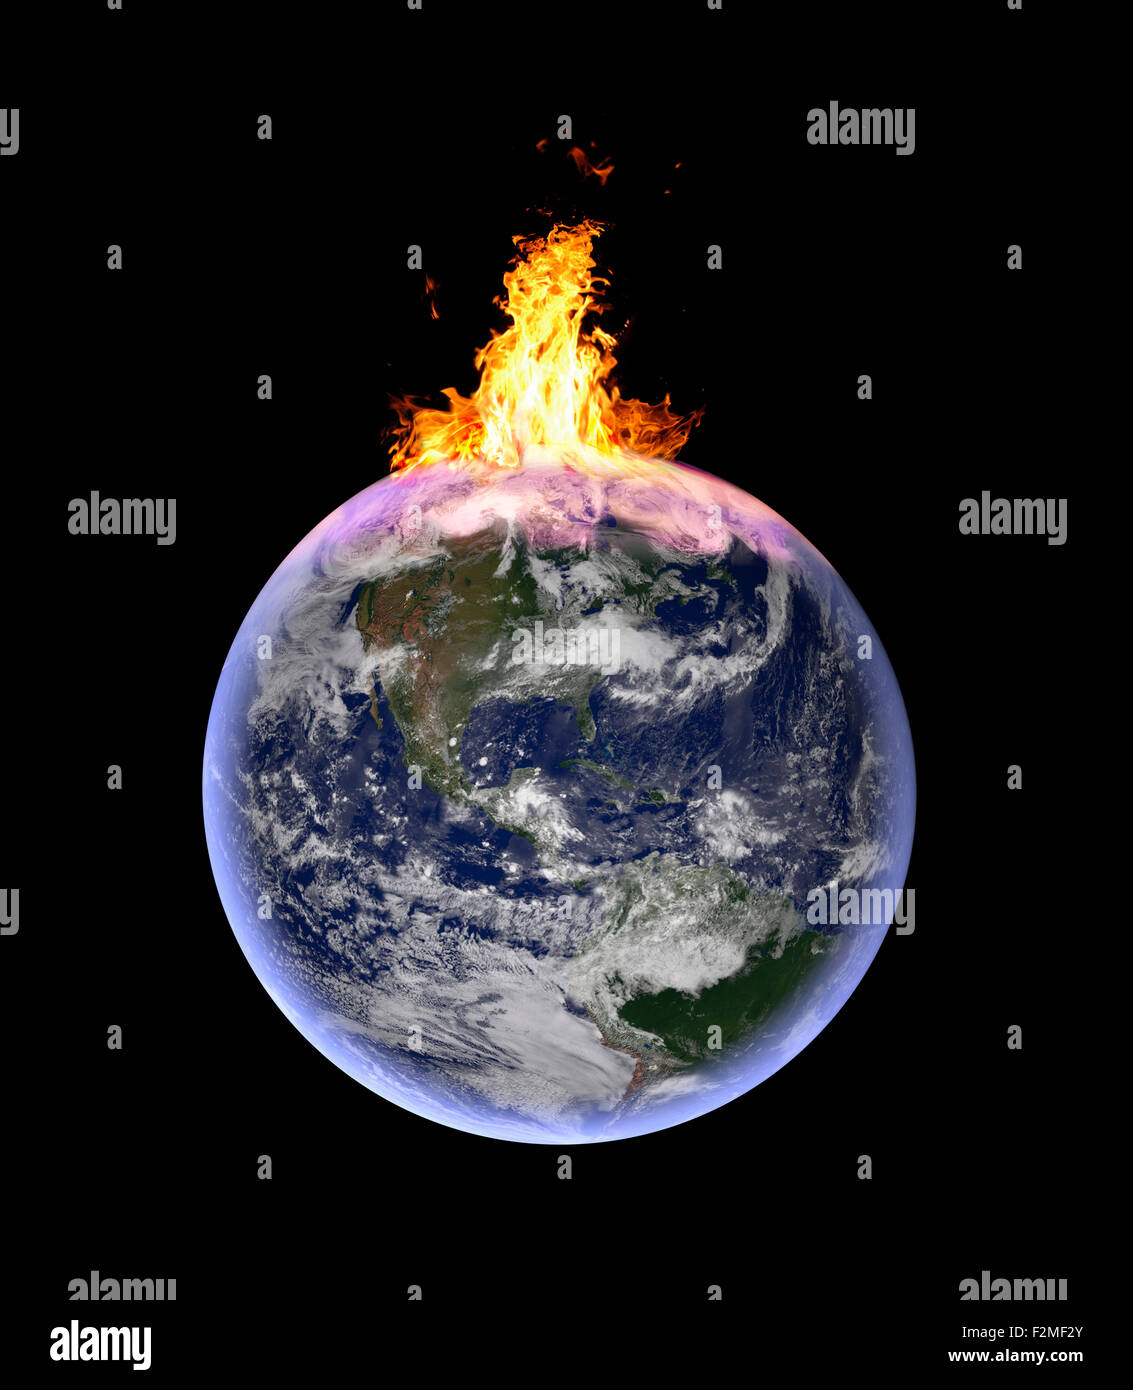 Symbolbild/ Illustration: verbrennender Erdball: Umweltzerstoerung und verbrauchte Ressource - CGI-Visualisierung: Erdball im We Stock Photo